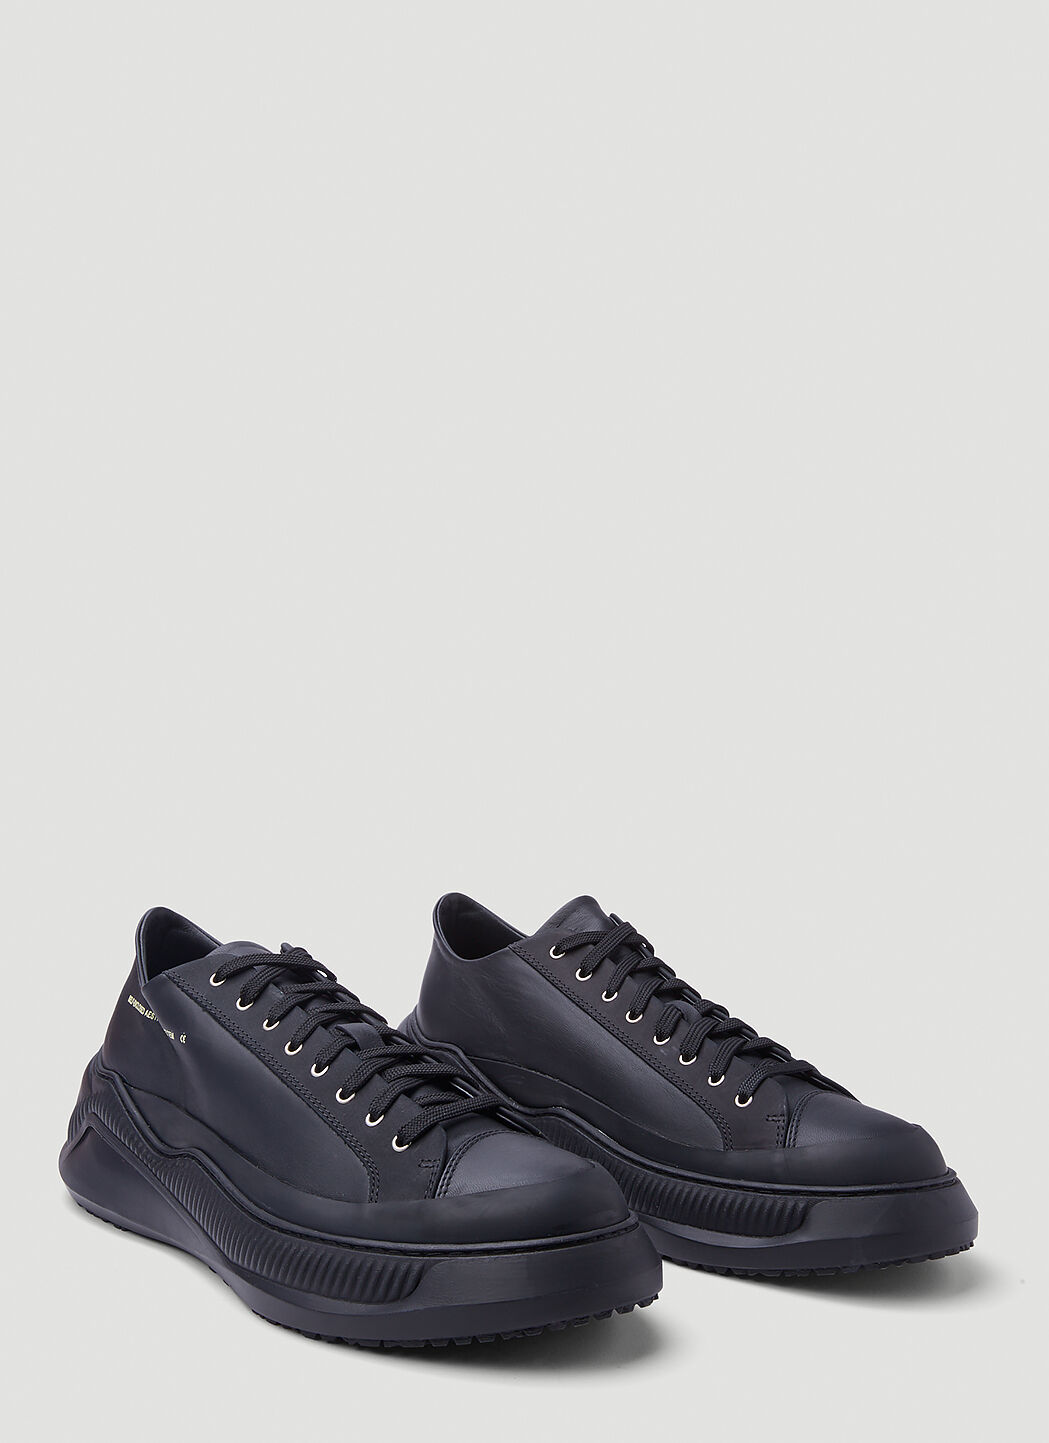 OAMC Free Solo Sneakers in Black | LN-CC